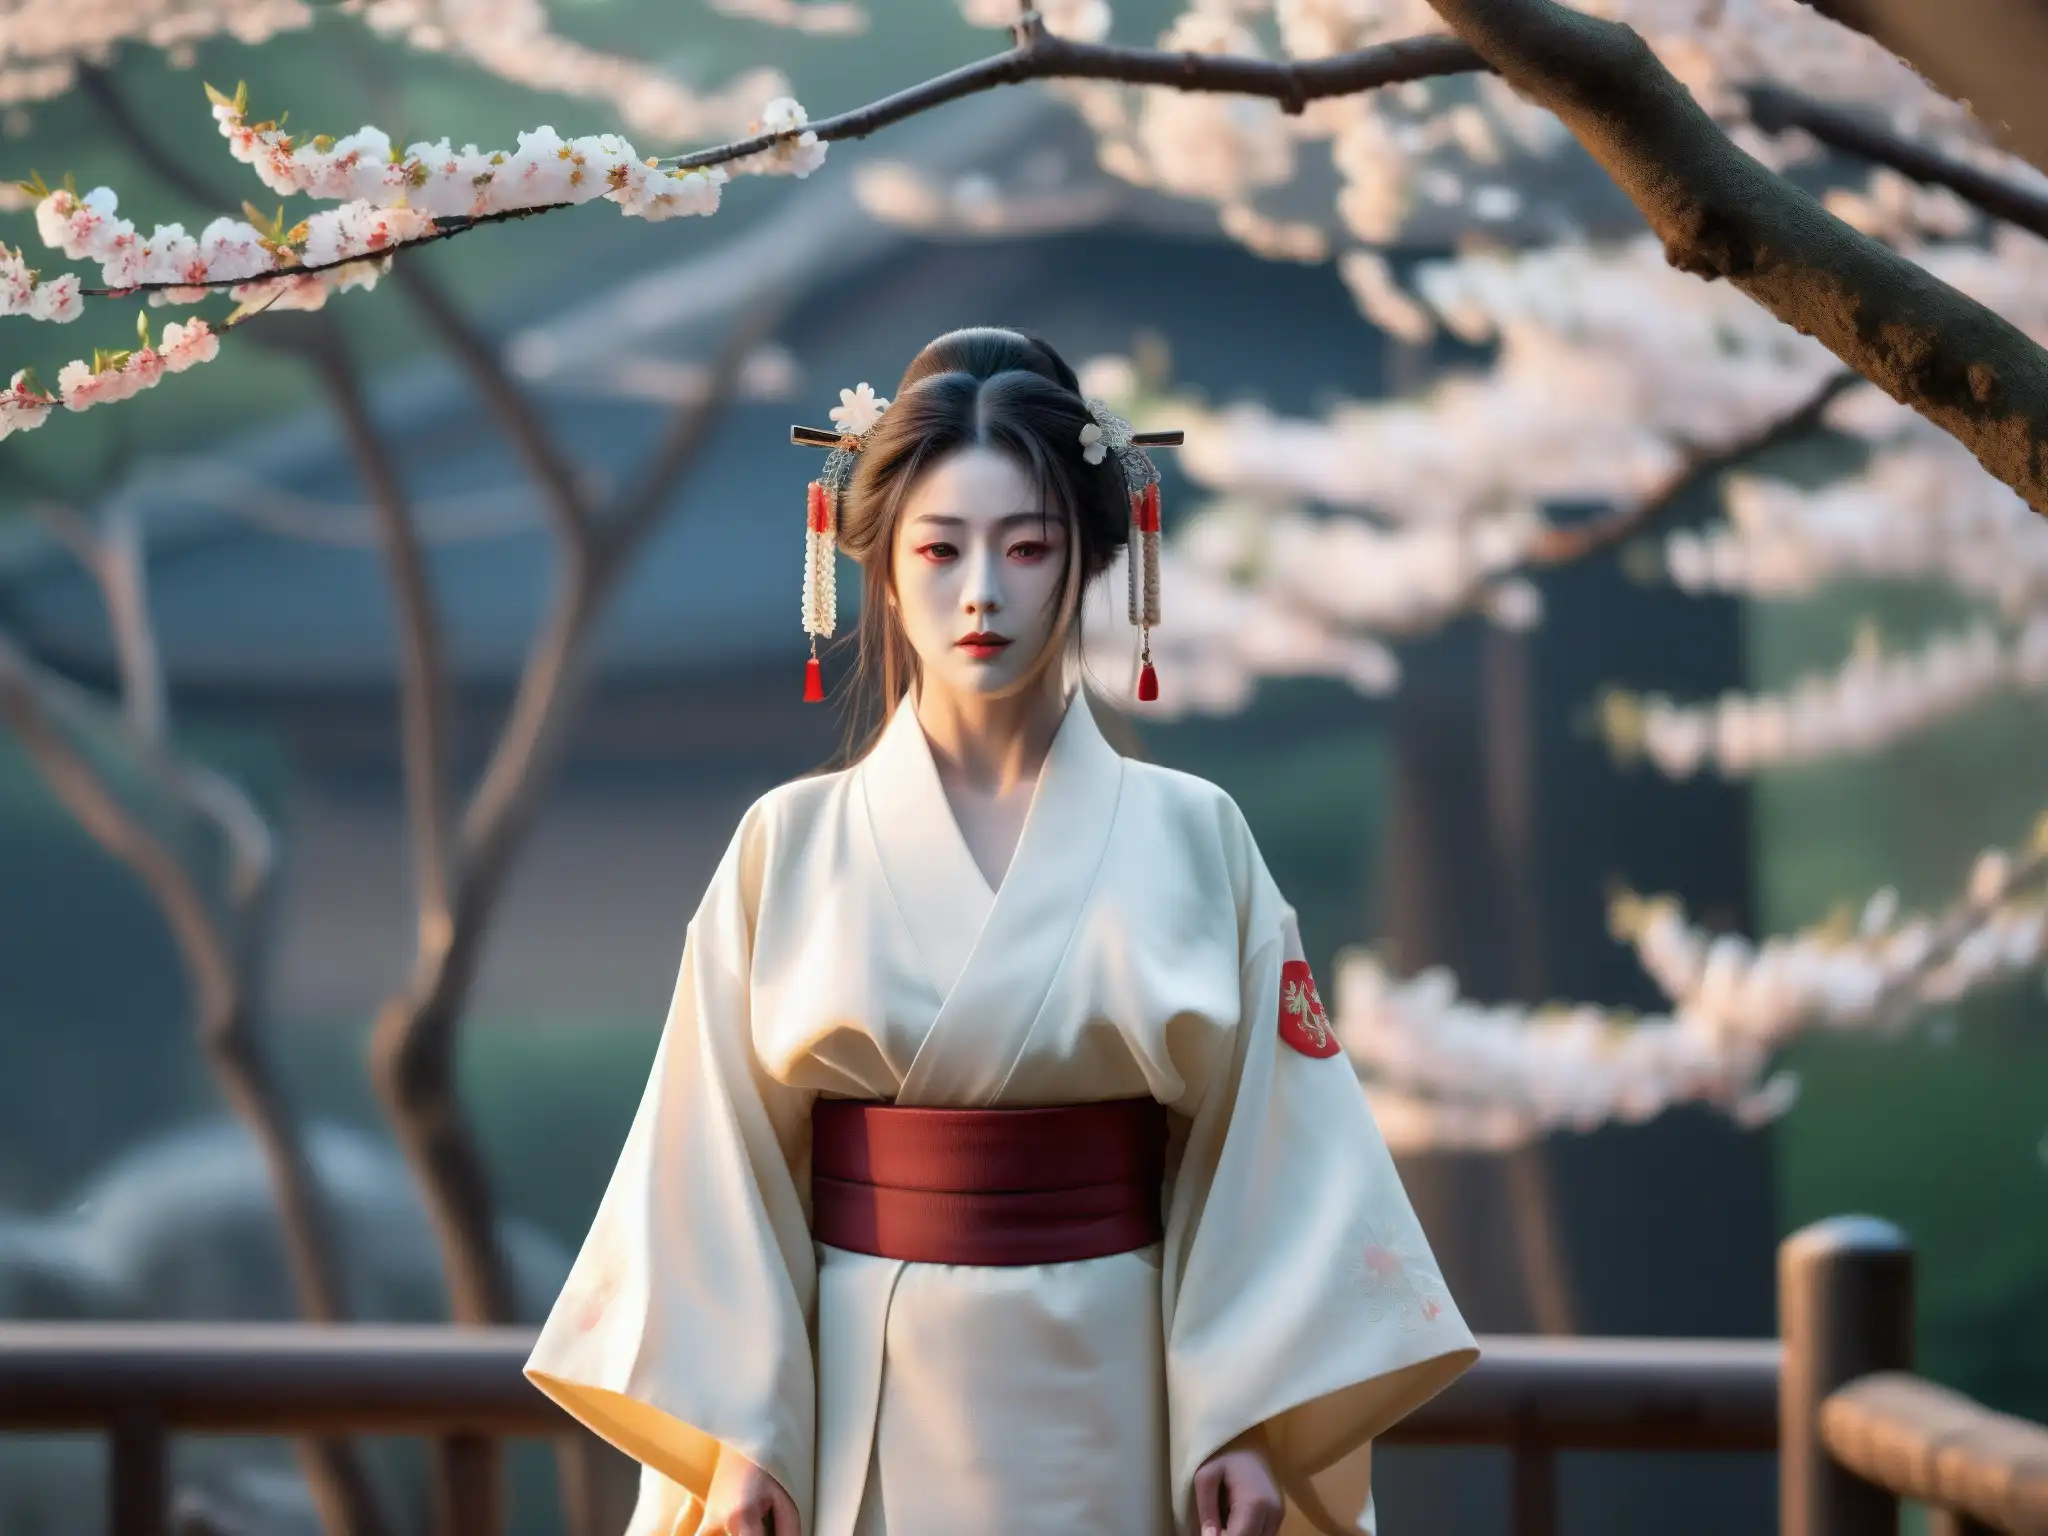 Un espectáculo de teatro Noh japonés con un fondo de hermosos cerezos en flor y un fantasma vengativo en un kimono blanco